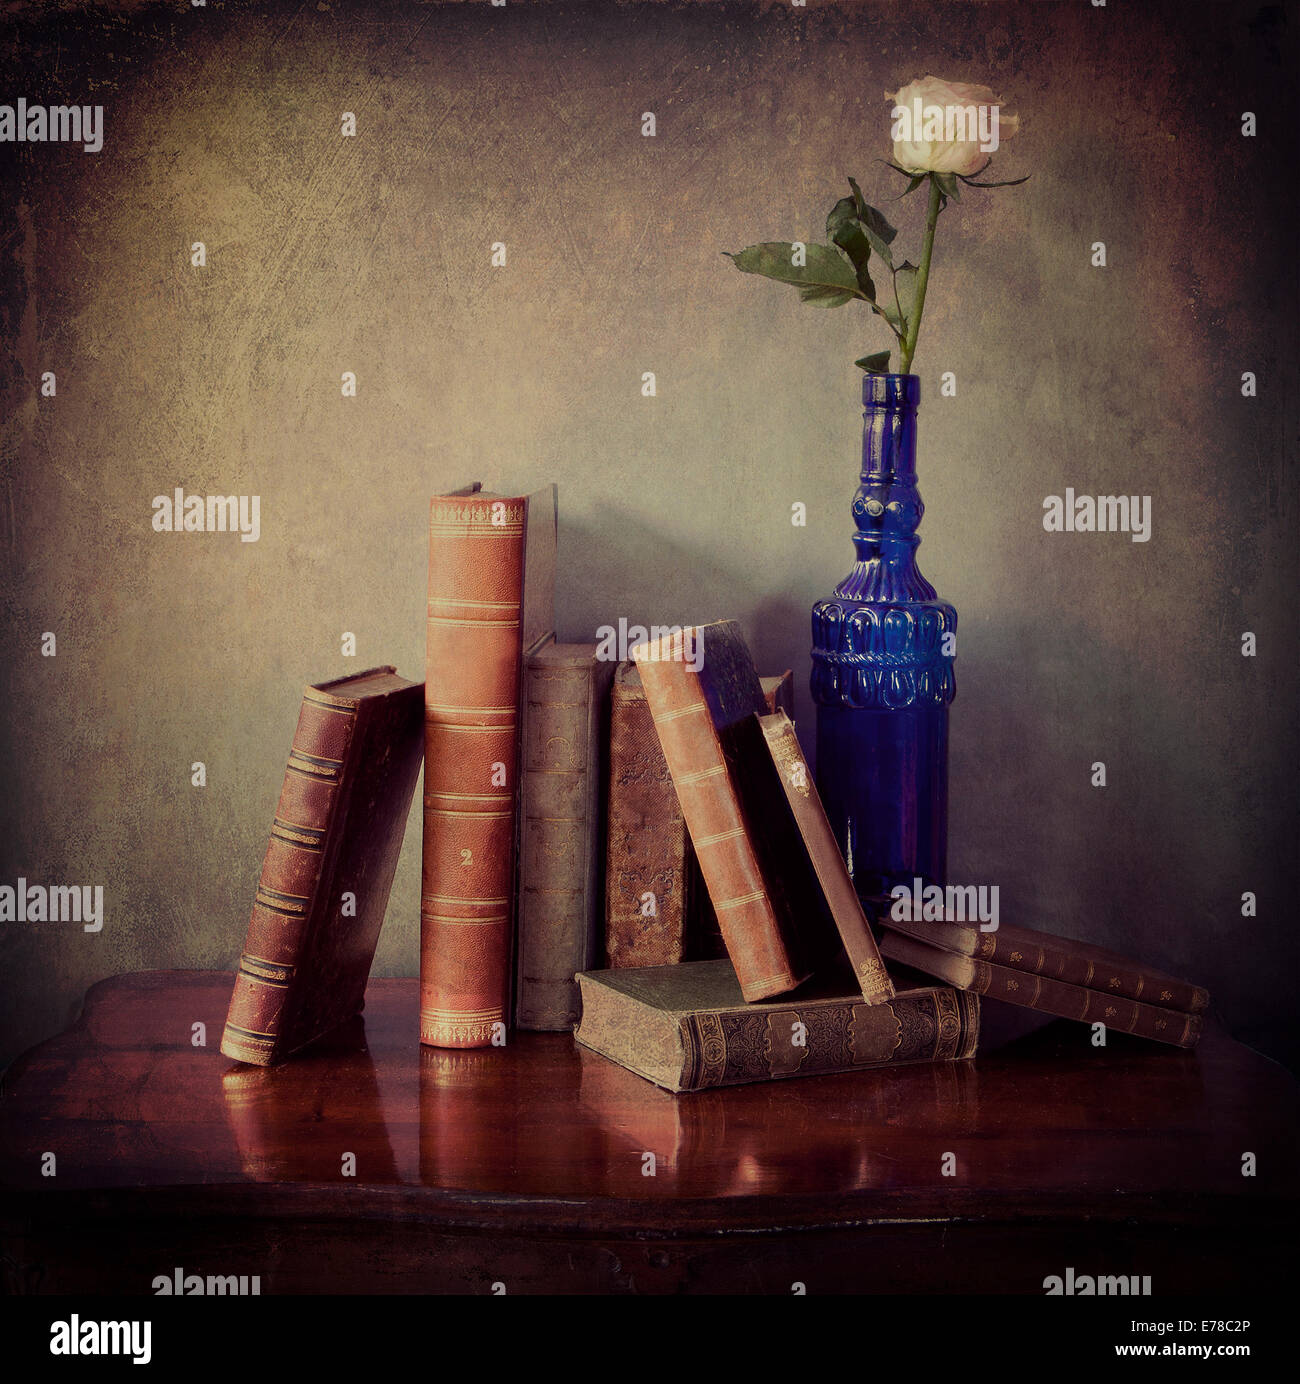 La vie toujours de l'intérieur, la composition de livres anciens sur une table en bois et d'une seule rose rose dans une bouteille bleue avec texture grunge Banque D'Images